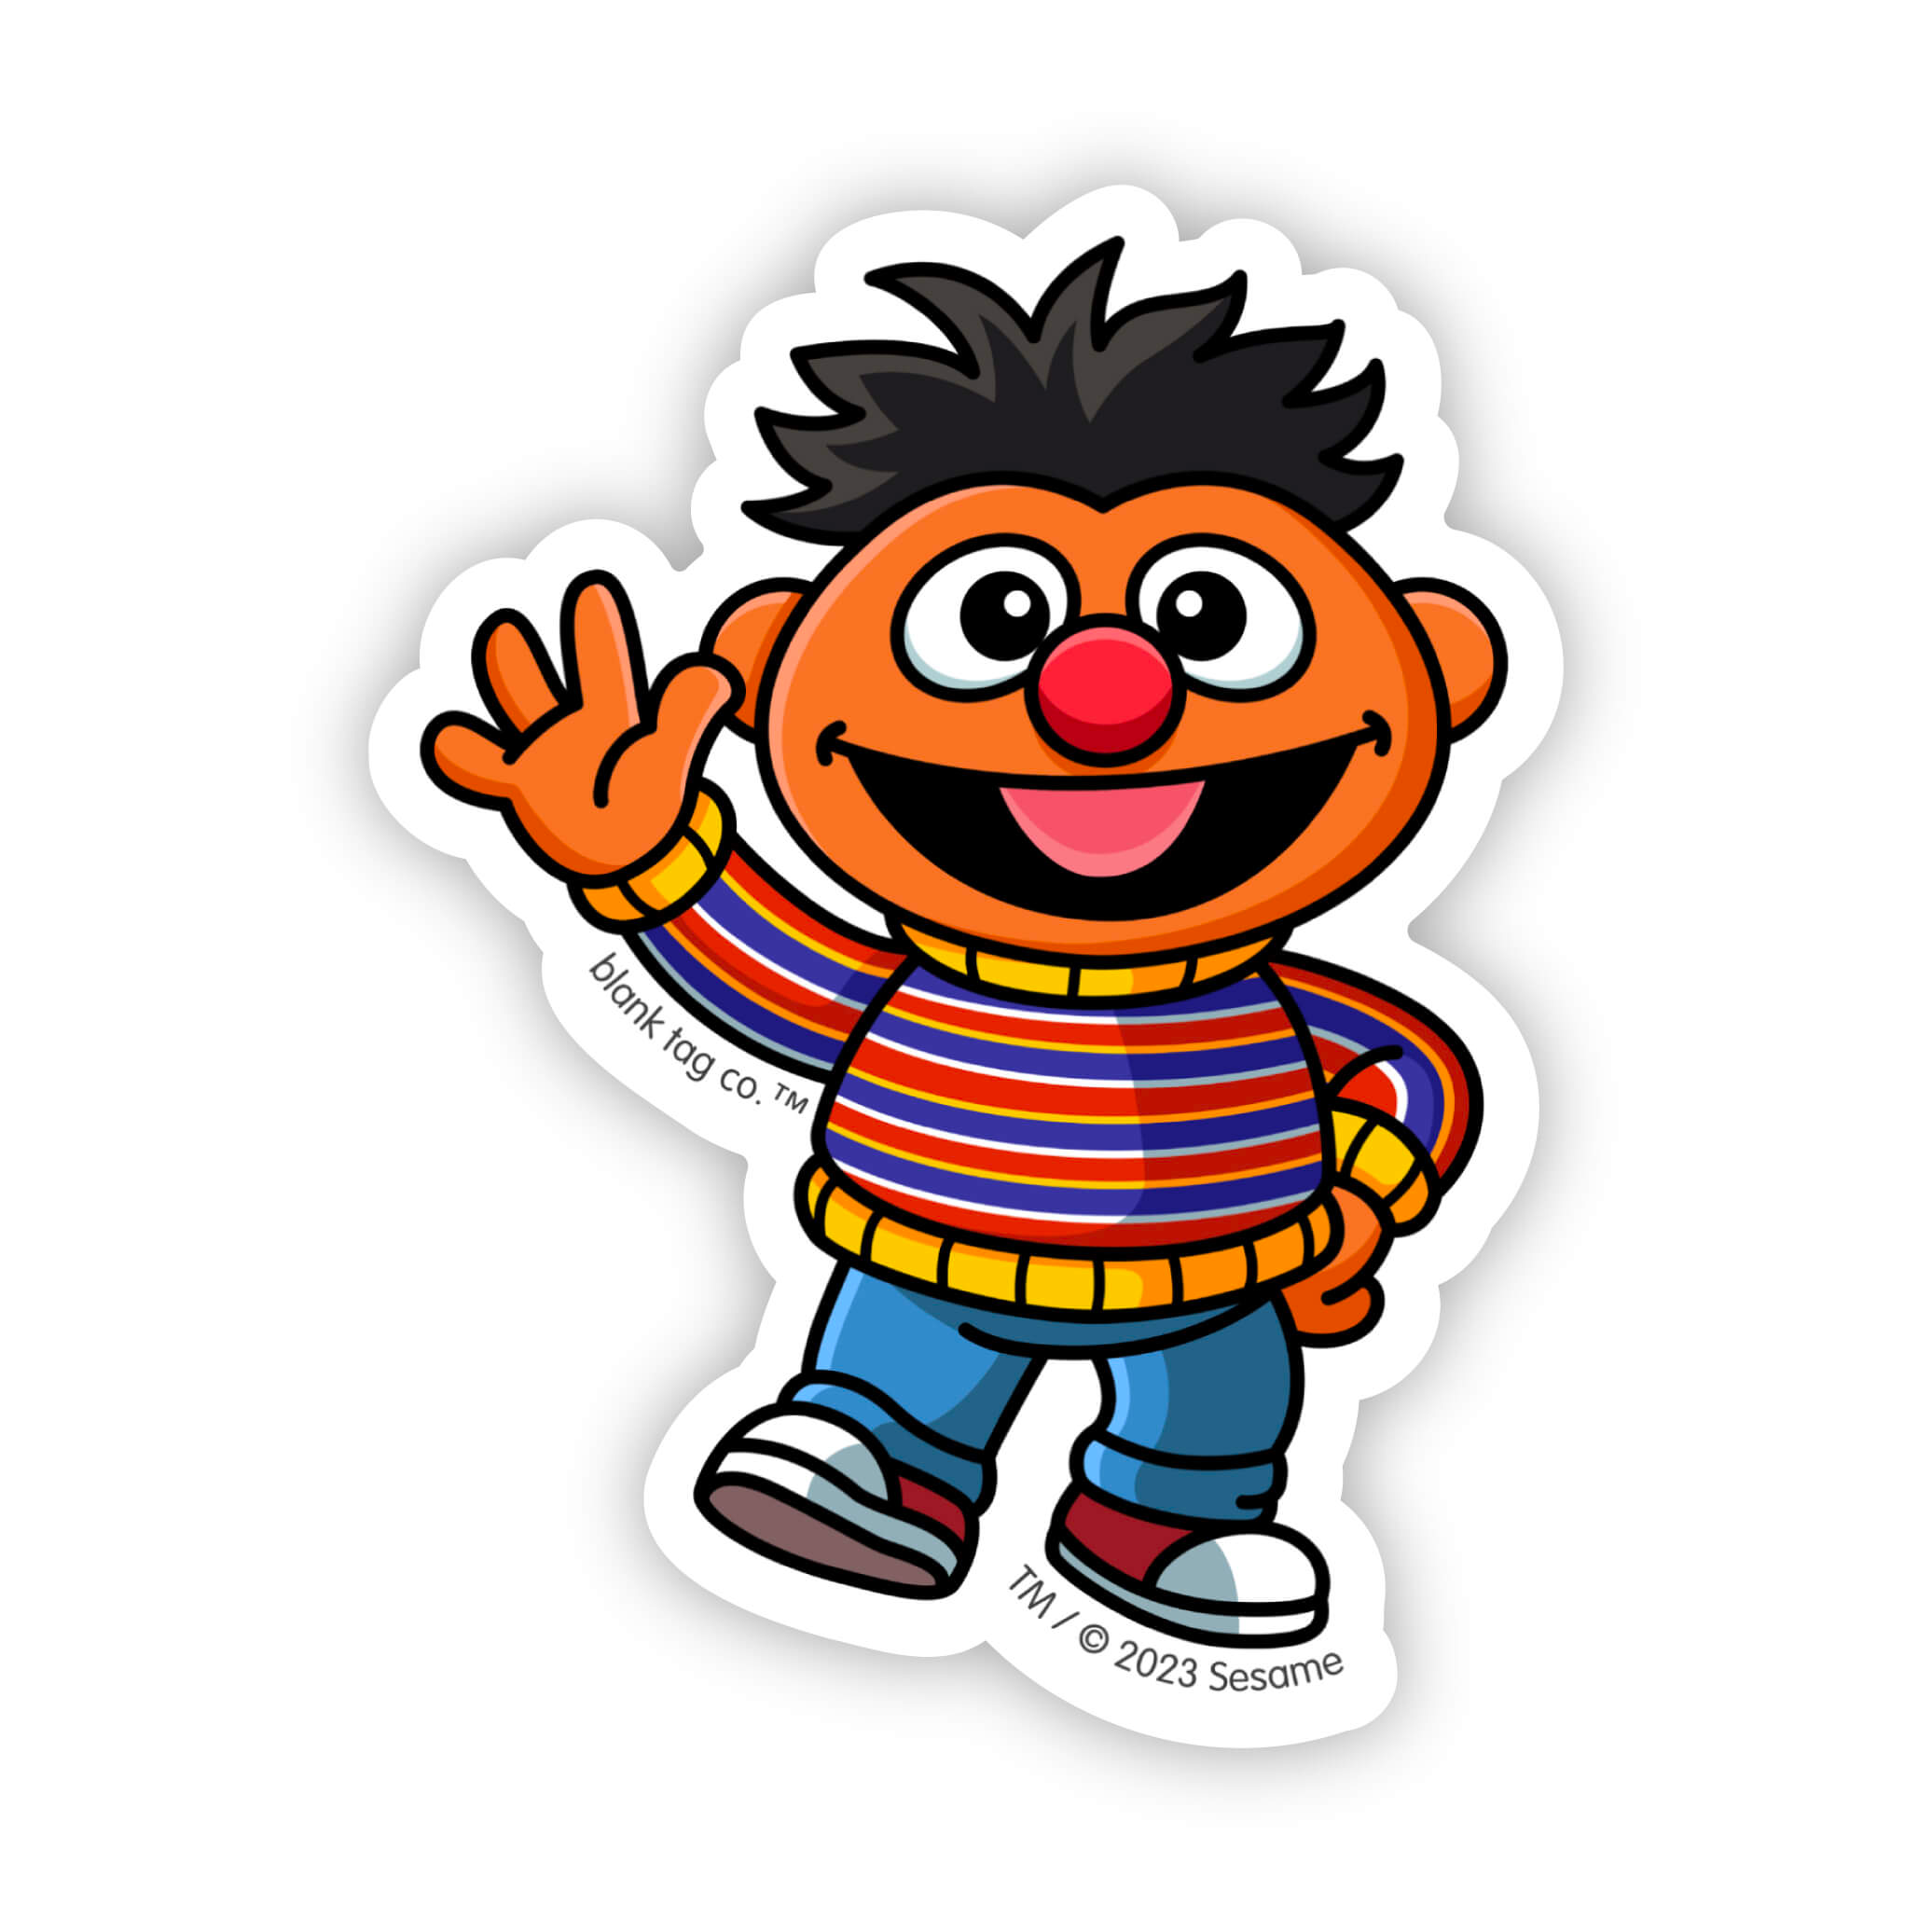 The Ernie Sticker